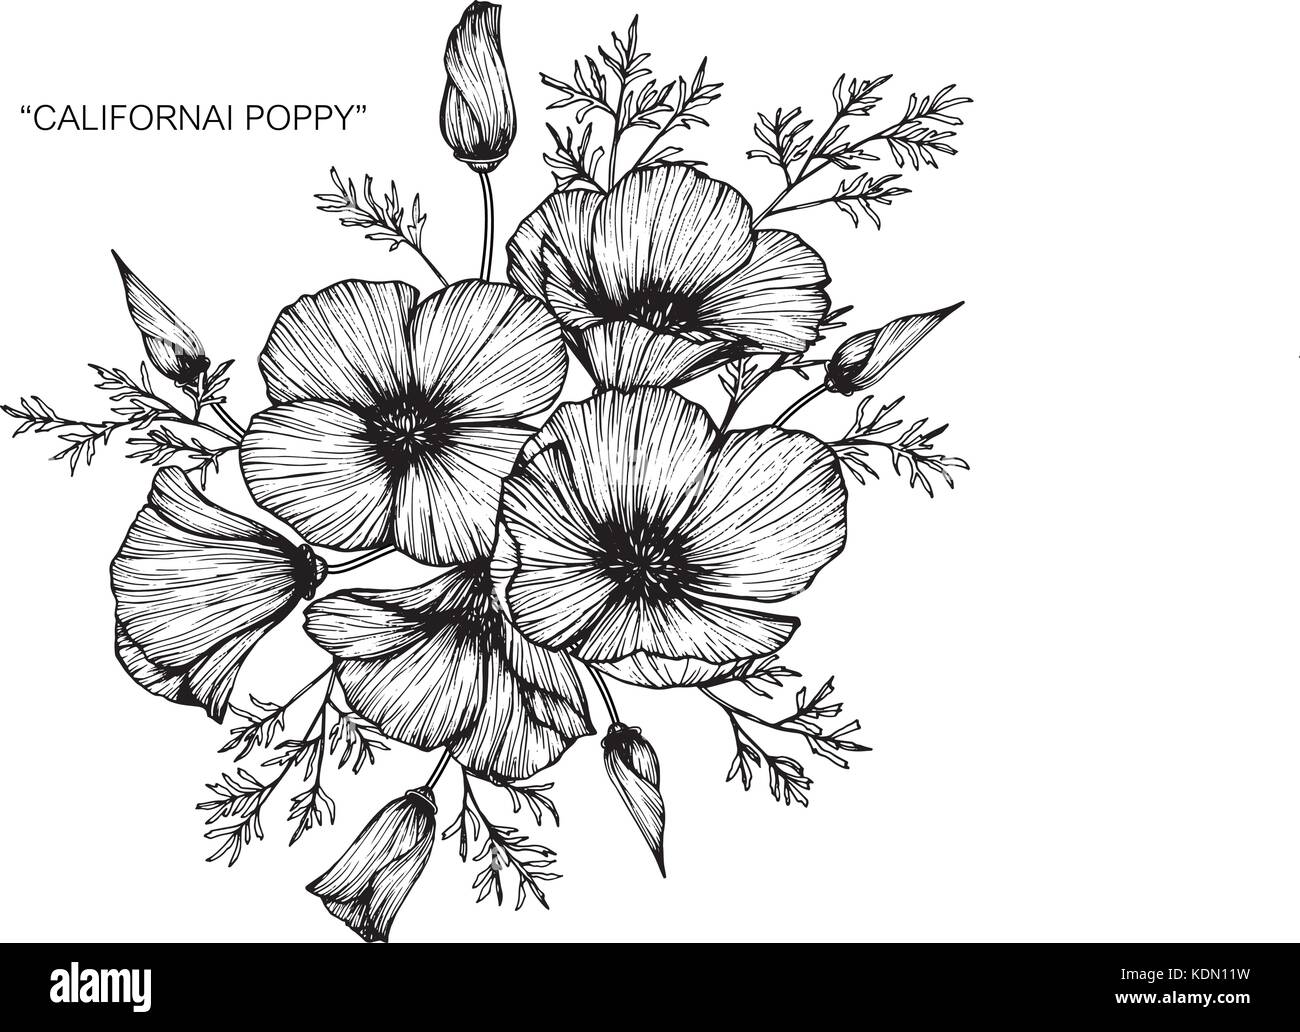 Eschscholzia californica flower Stock Vector Images - Alamy